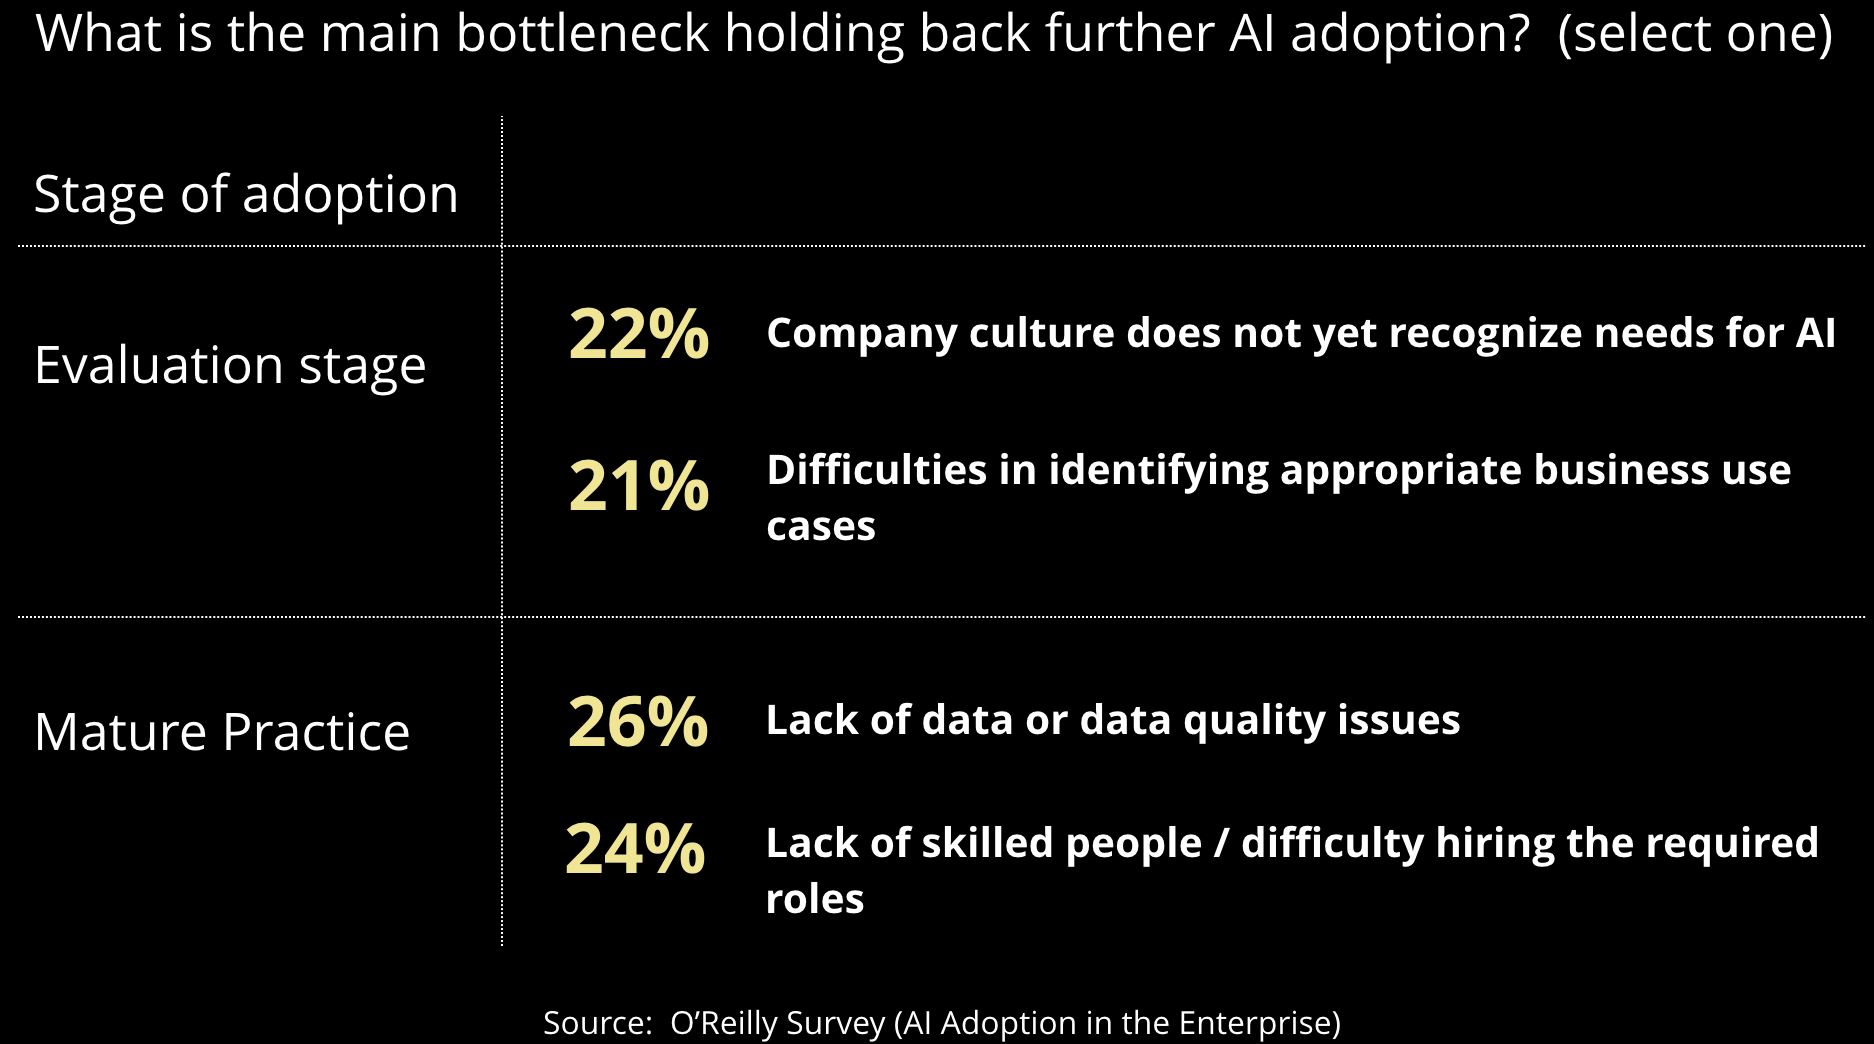 bottlenecks holding back adoption of AI